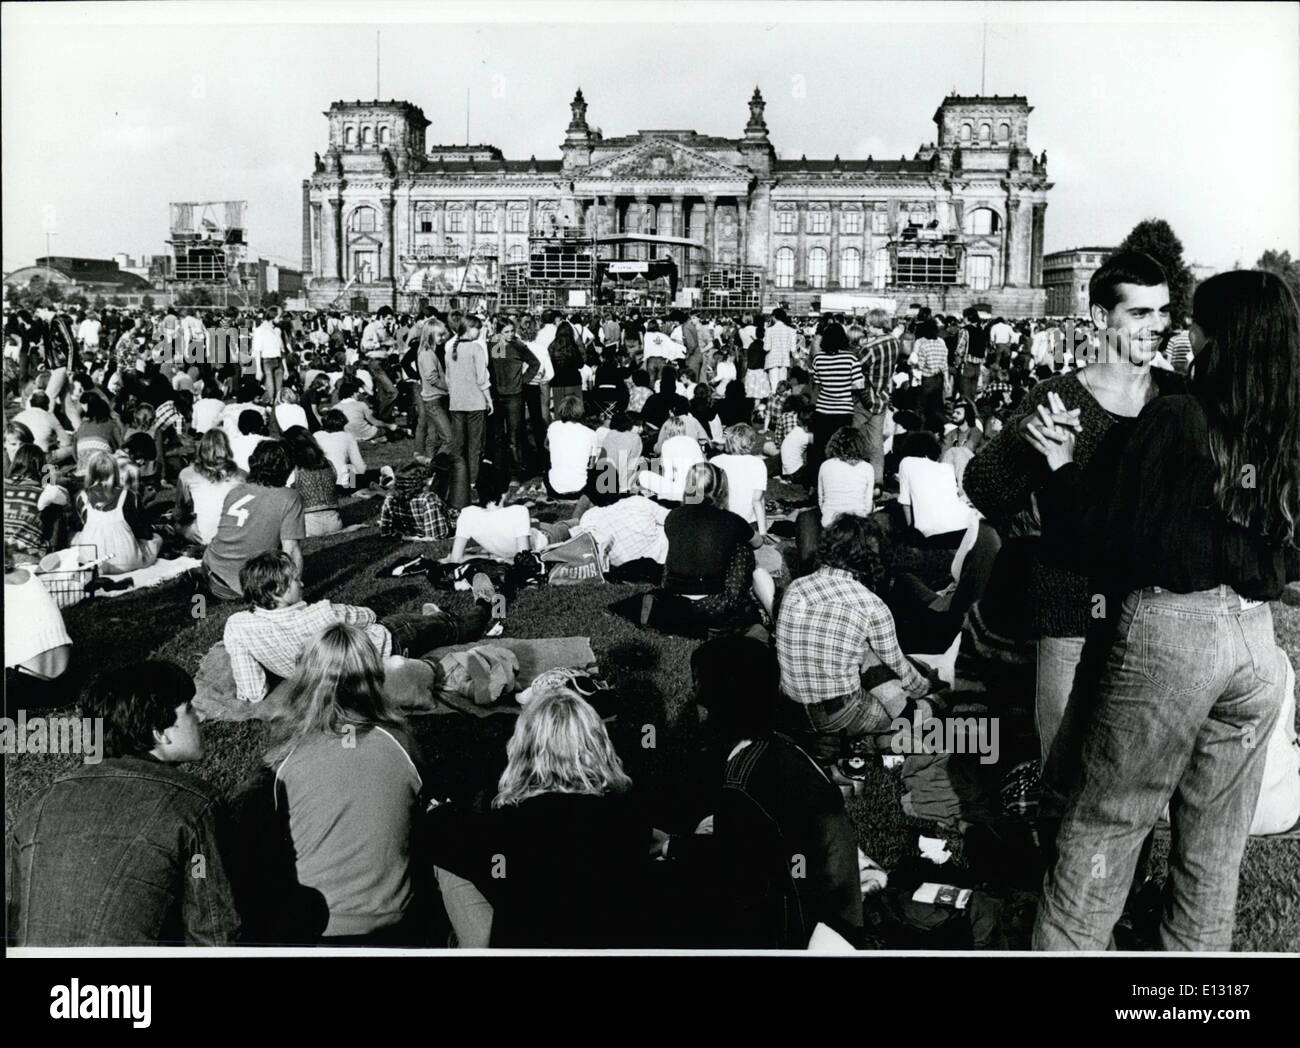 26. Februar 2012 - Rock-Konzert vor der Berliner Mauer die größte Open-Air-Rock-Konzert von Europa nahm Platz in Berlin - vor dem Berliner Reichstags-Gebäude (Bild) und - Wand. Rund 150.000 junge Menschen wurden von der berühmten britischen Gruppe "Barclay James Harvest'', '' Freiheit für Berlin'' auch sang genossen. Rund 500 junge Menschen aus dem Ostteil von Berlin wurden versucht, hören Sie die Musik aus West, aber gestoppt und brachte von der Wand weg von den Mitgliedern der Volkspolizei der DDR. Stockfoto